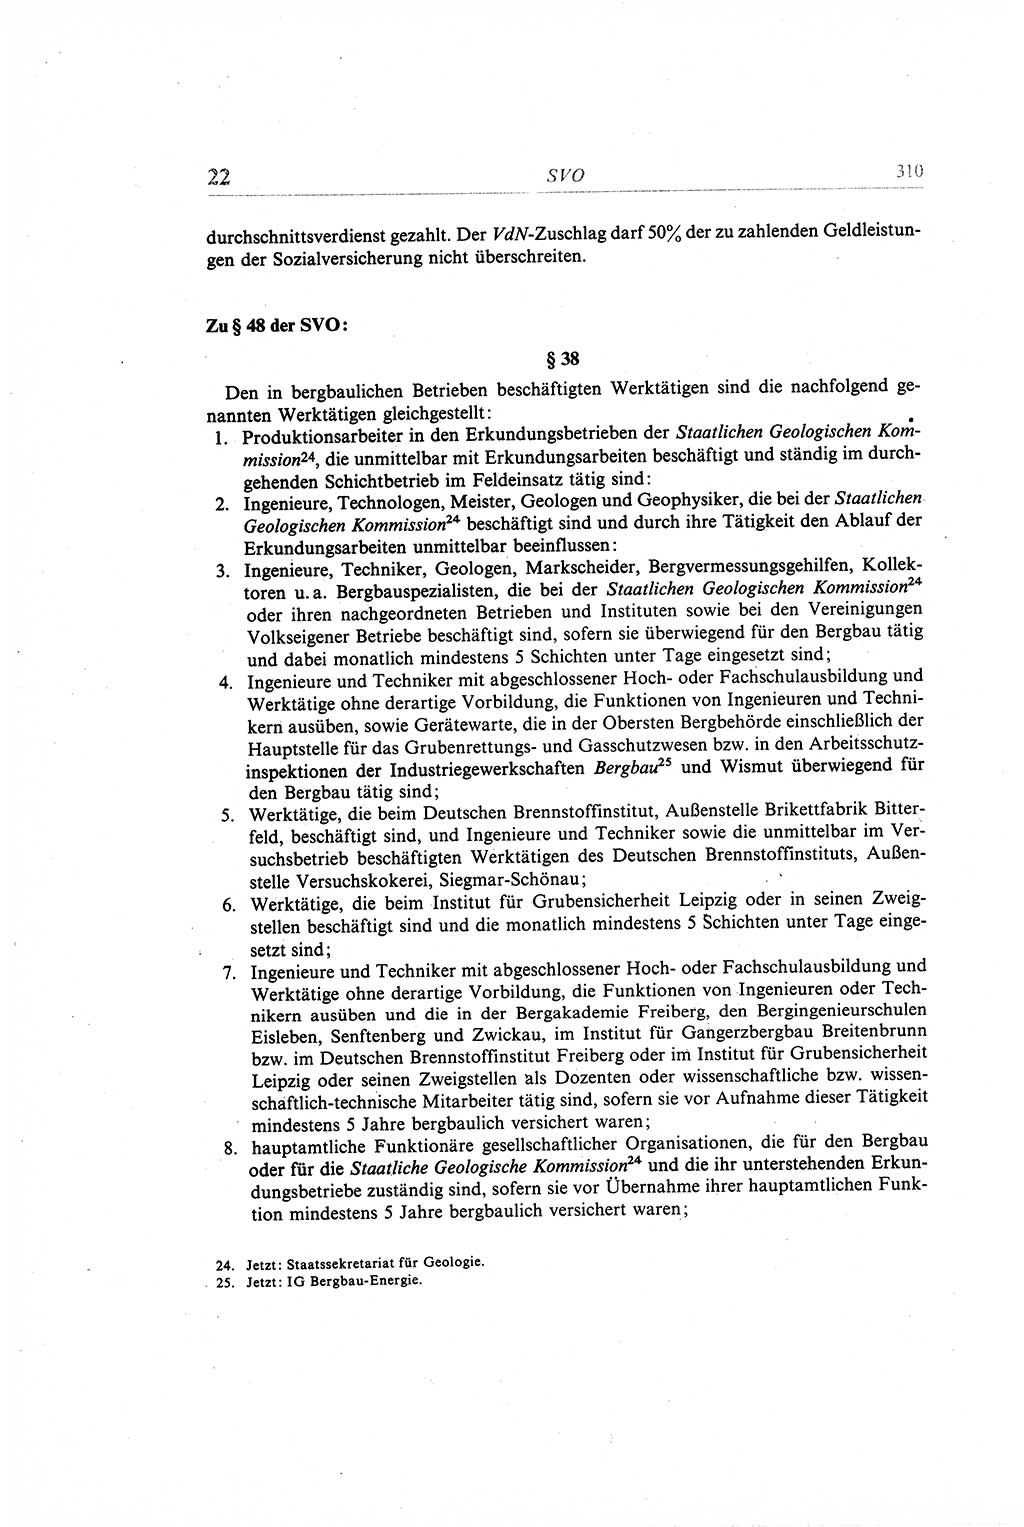 Gesetzbuch der Arbeit (GBA) und andere ausgewählte rechtliche Bestimmungen [Deutsche Demokratische Republik (DDR)] 1968, Seite 310 (GBA DDR 1968, S. 310)